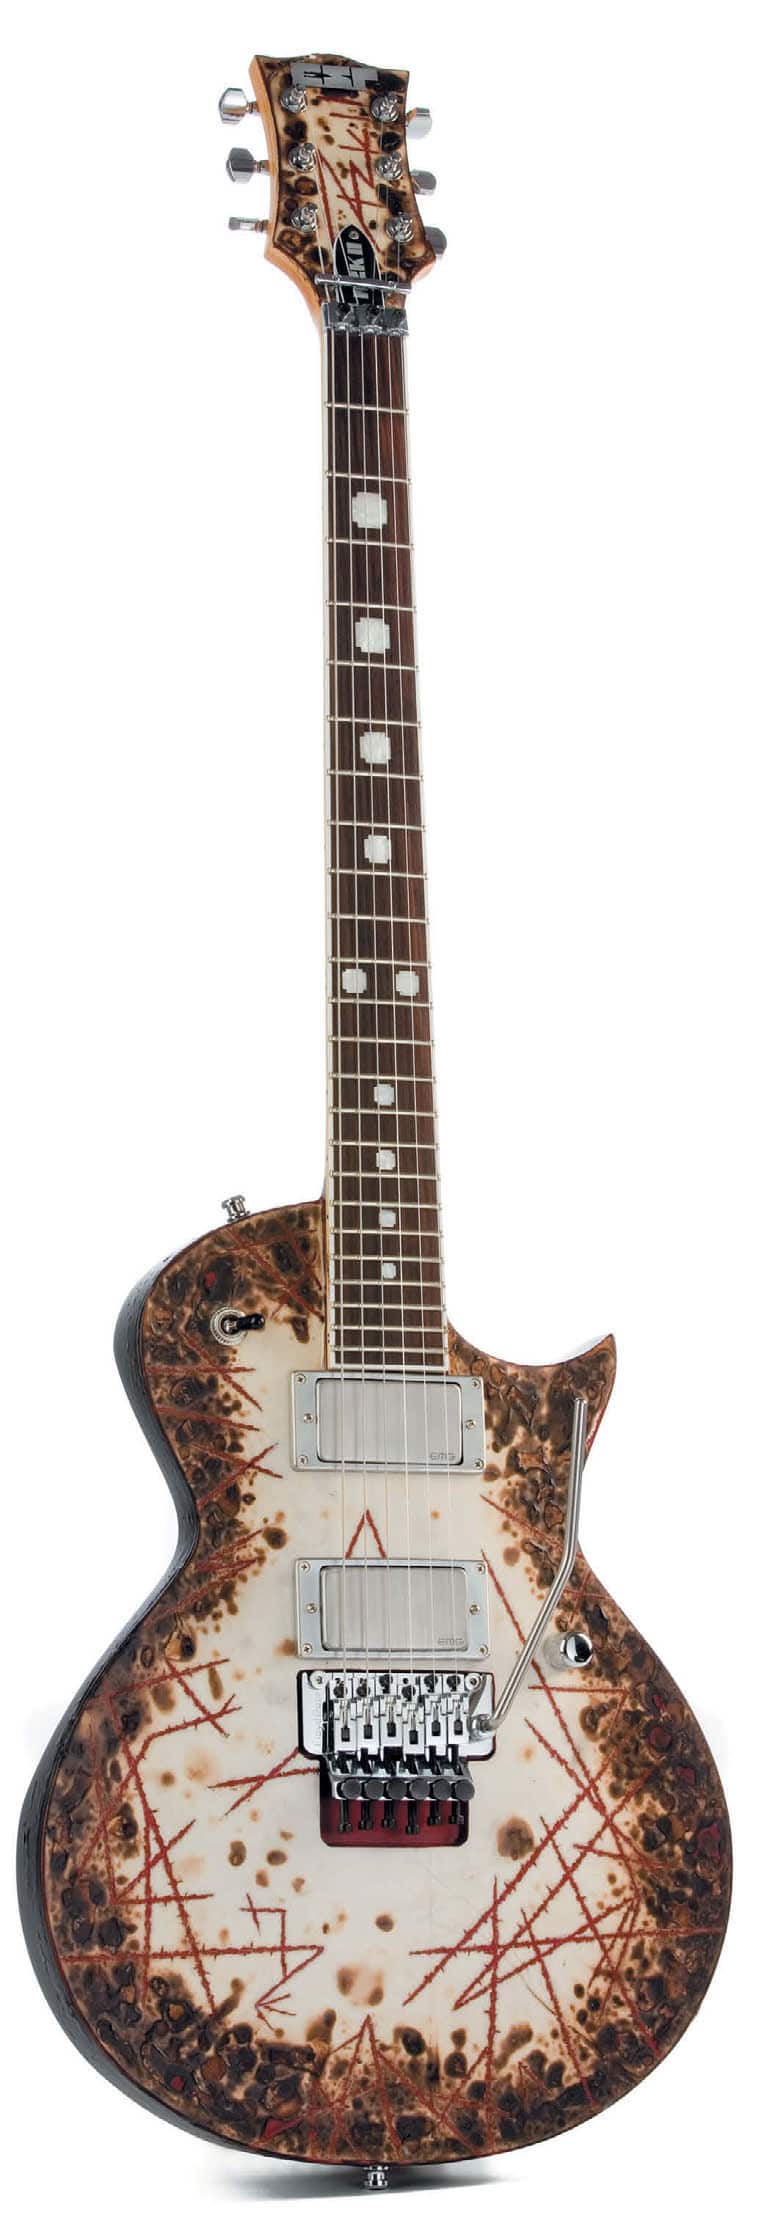 E-Gitarre im Les-Paul-Style von ESP, mit voll brontaler Rrrrammstein-Pyro-Kokel-Oberfläche, stehend